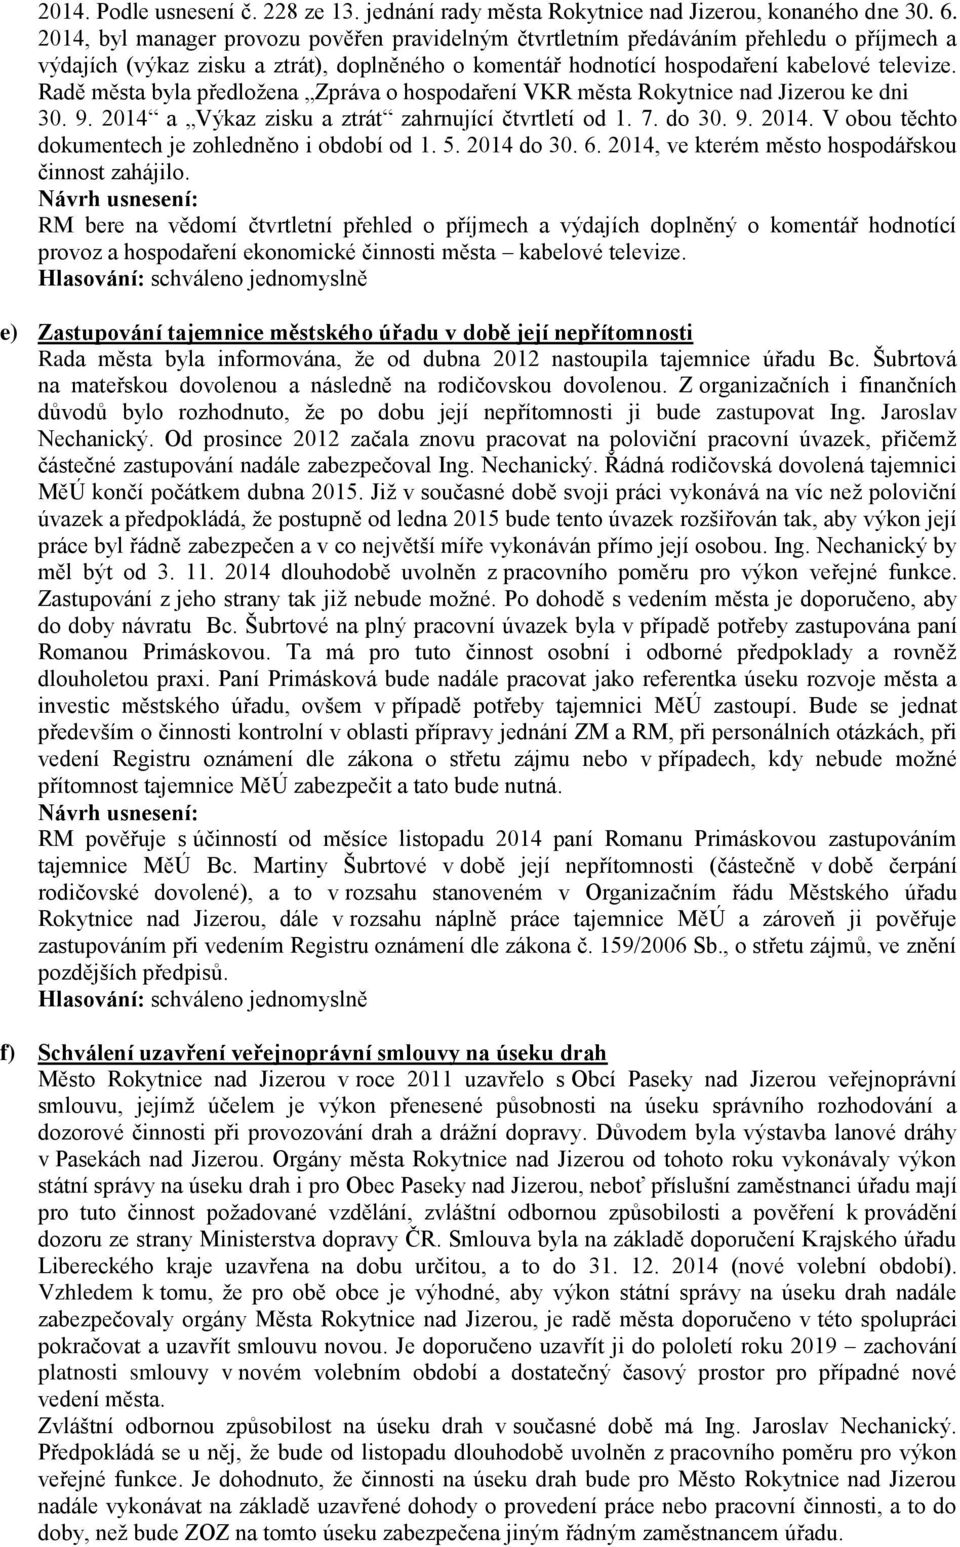 Radě města byla předložena Zpráva o hospodaření VKR města Rokytnice nad Jizerou ke dni 30. 9. 2014 a Výkaz zisku a ztrát zahrnující čtvrtletí od 1. 7. do 30. 9. 2014. V obou těchto dokumentech je zohledněno i období od 1.